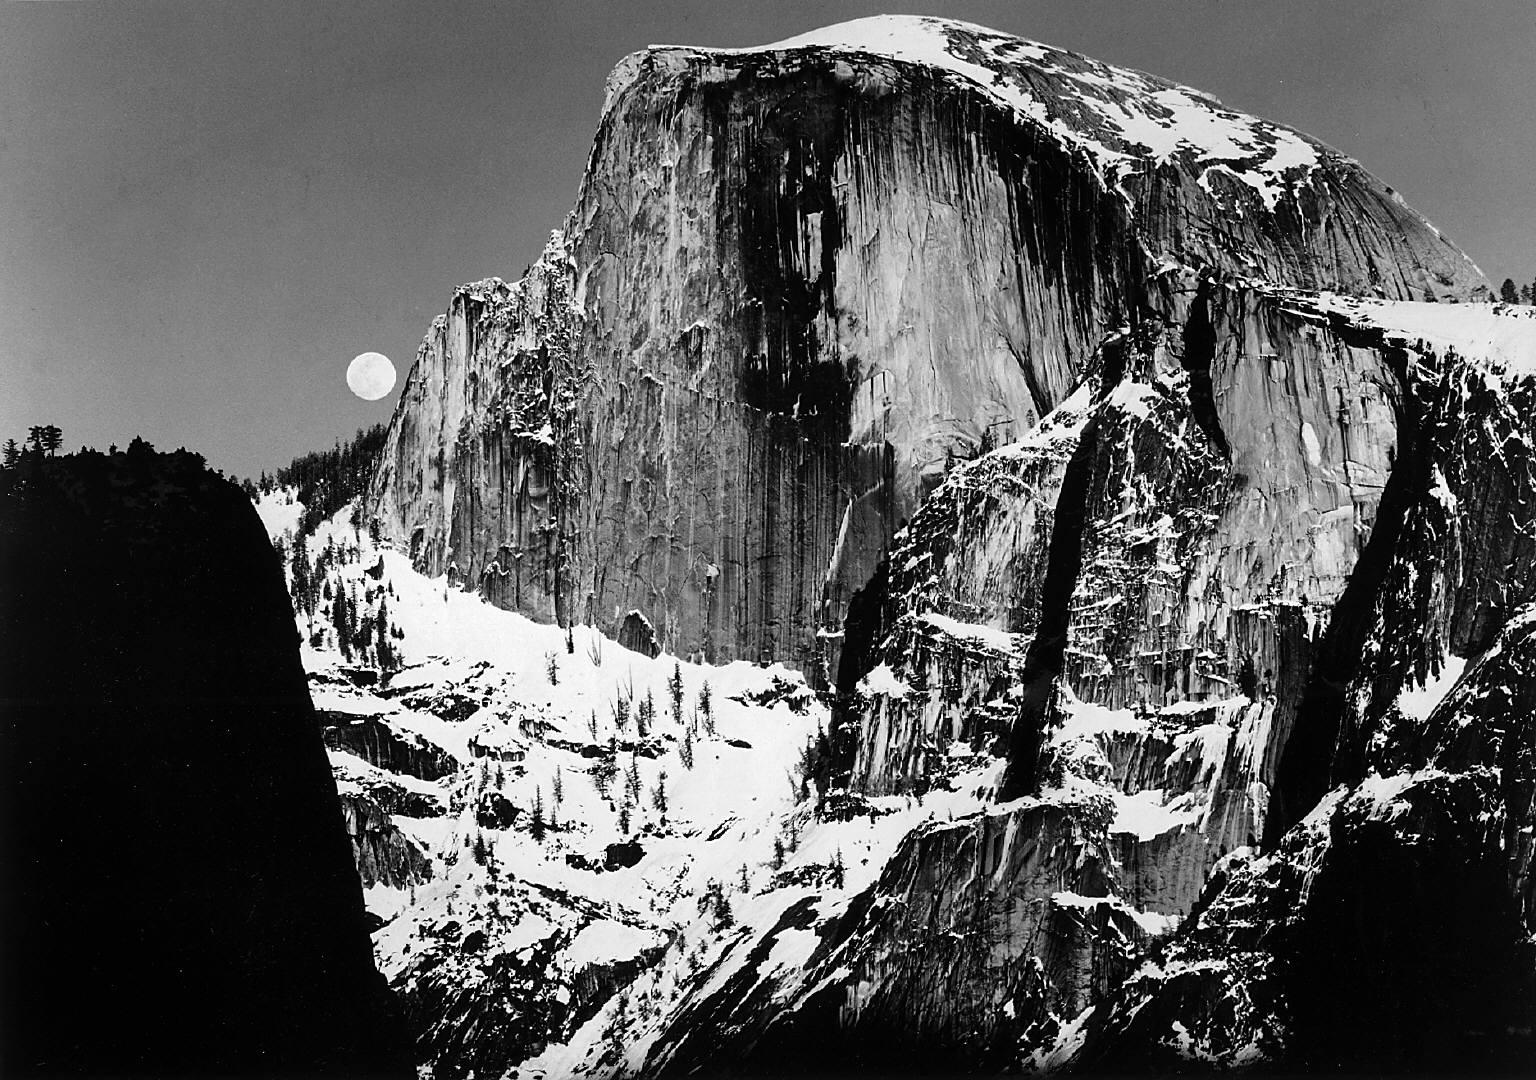 ansel-adams-half-dome-and-moon-yosemite-valley-ca-circa-1950-painting-artwork-print.jpeg